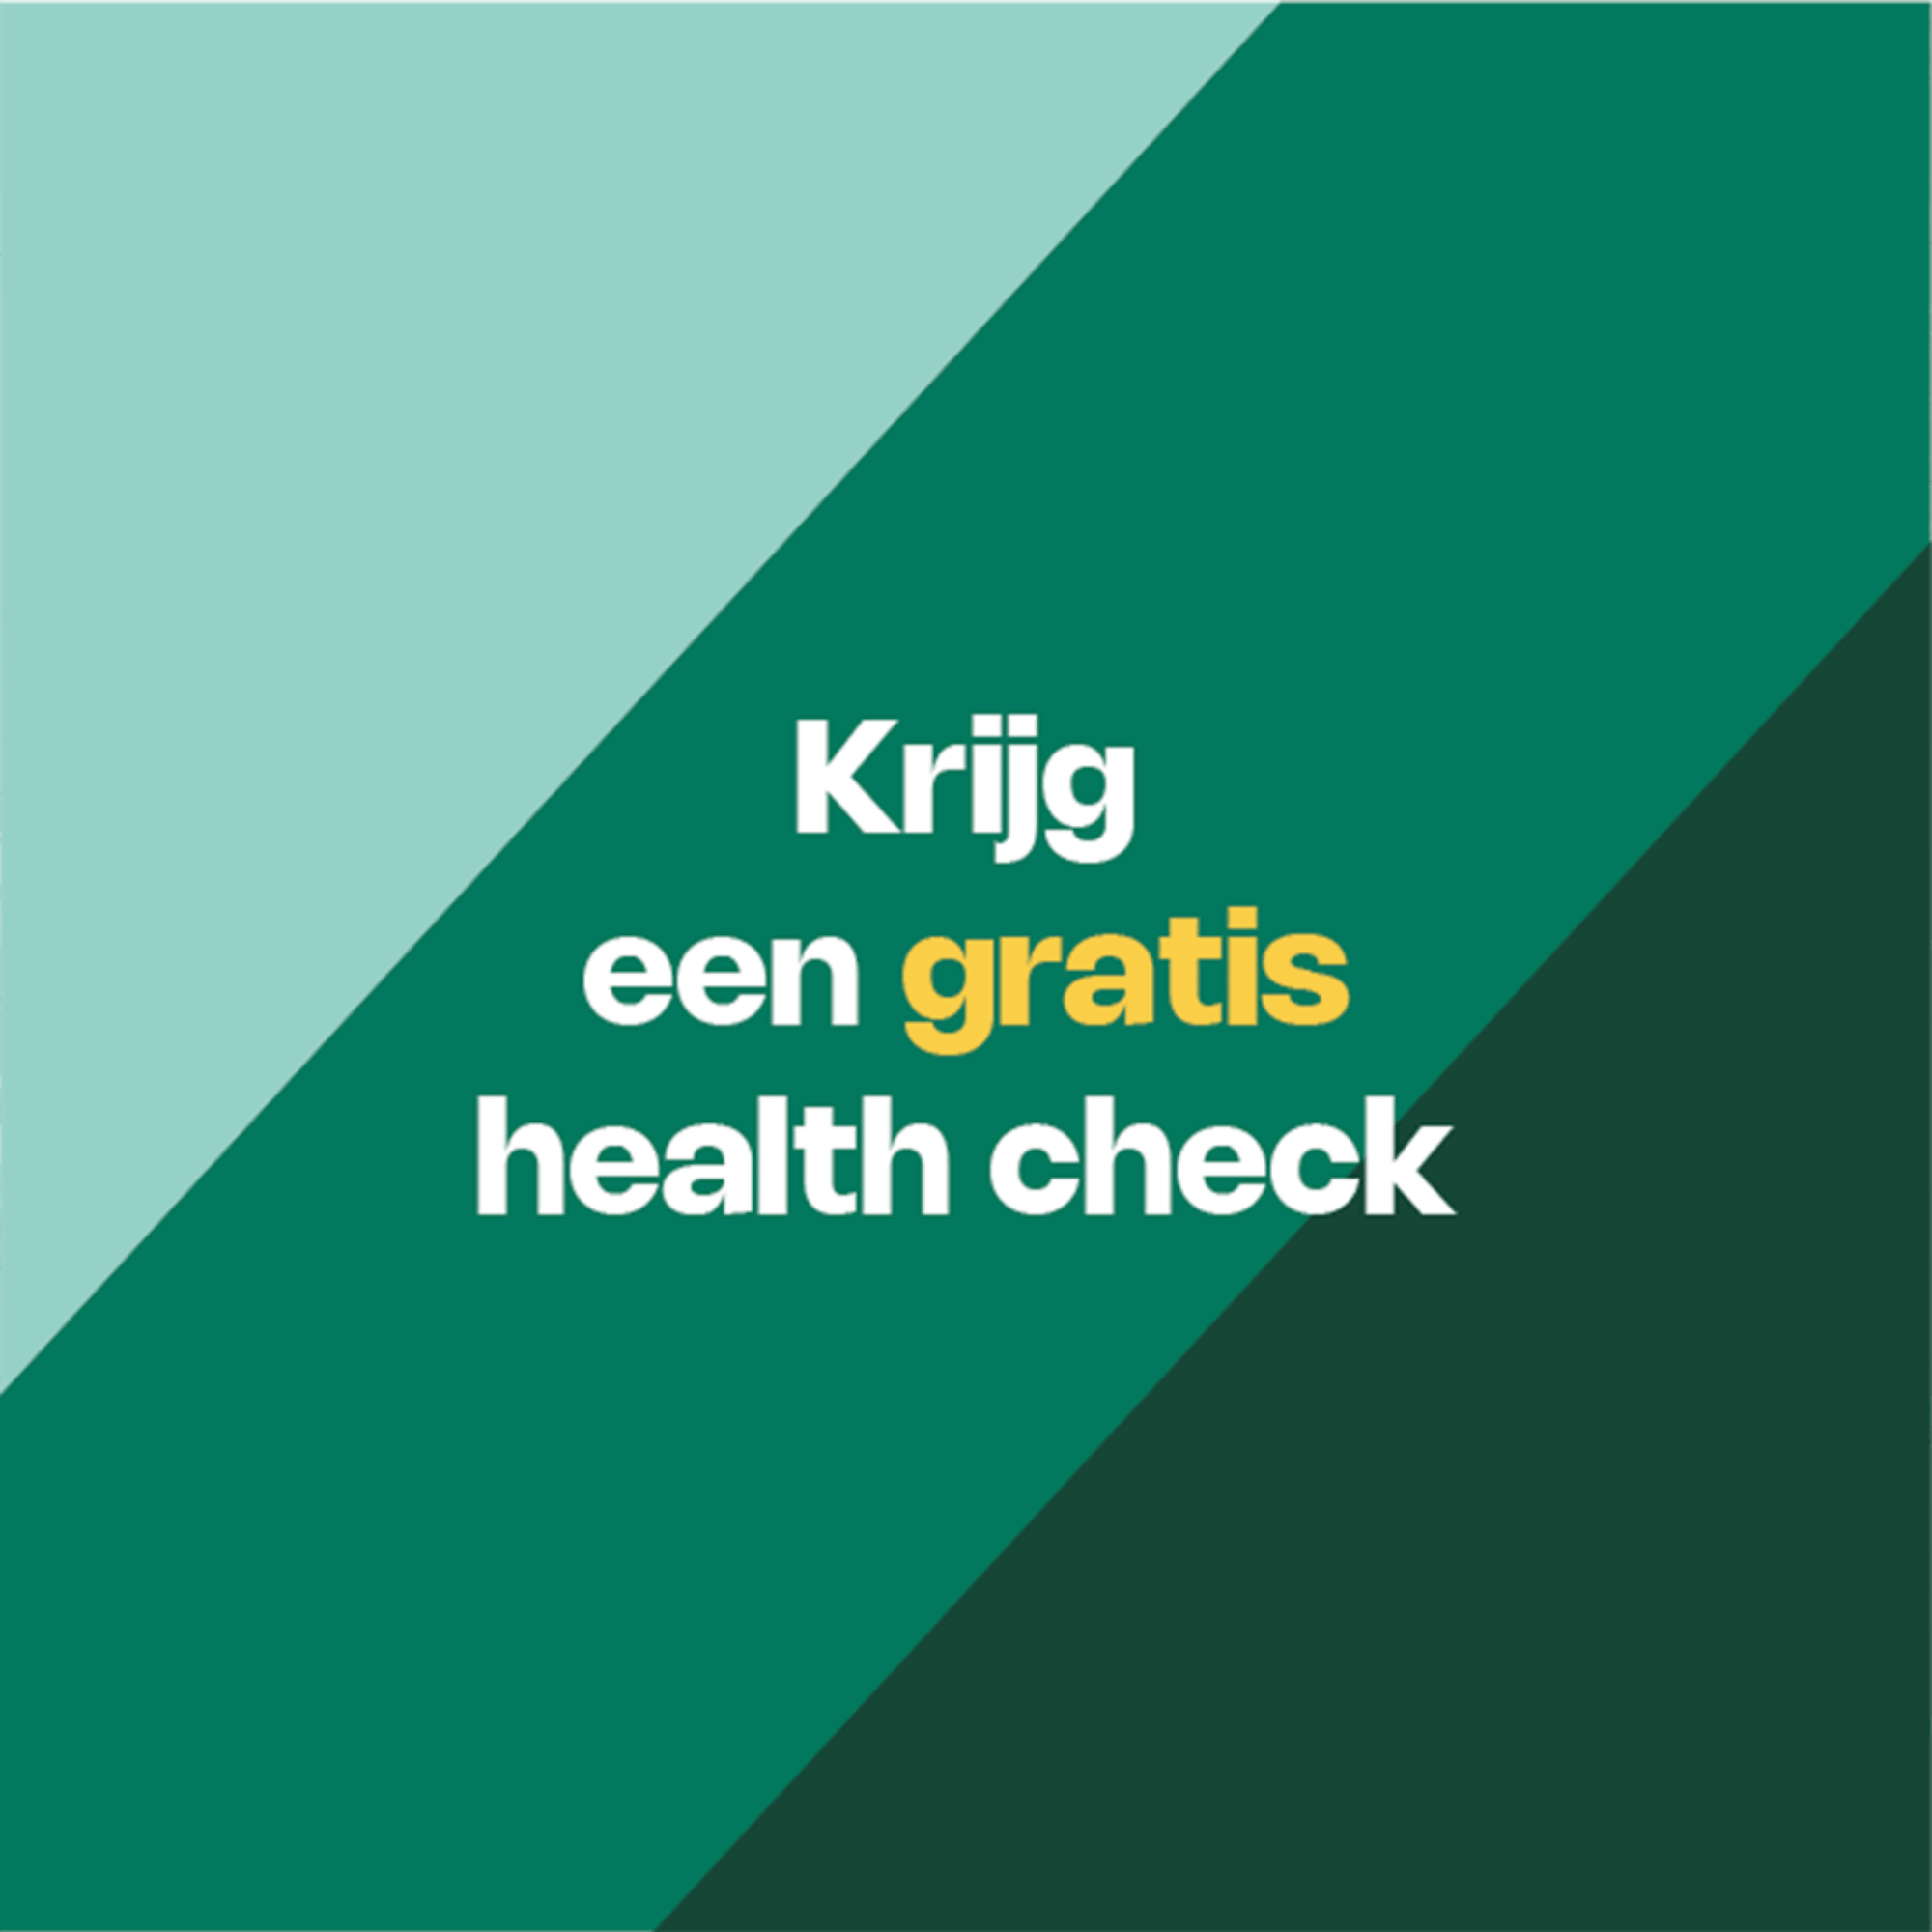 Krijg een gratis health check opendeurdagen Vision 21 Roeselare